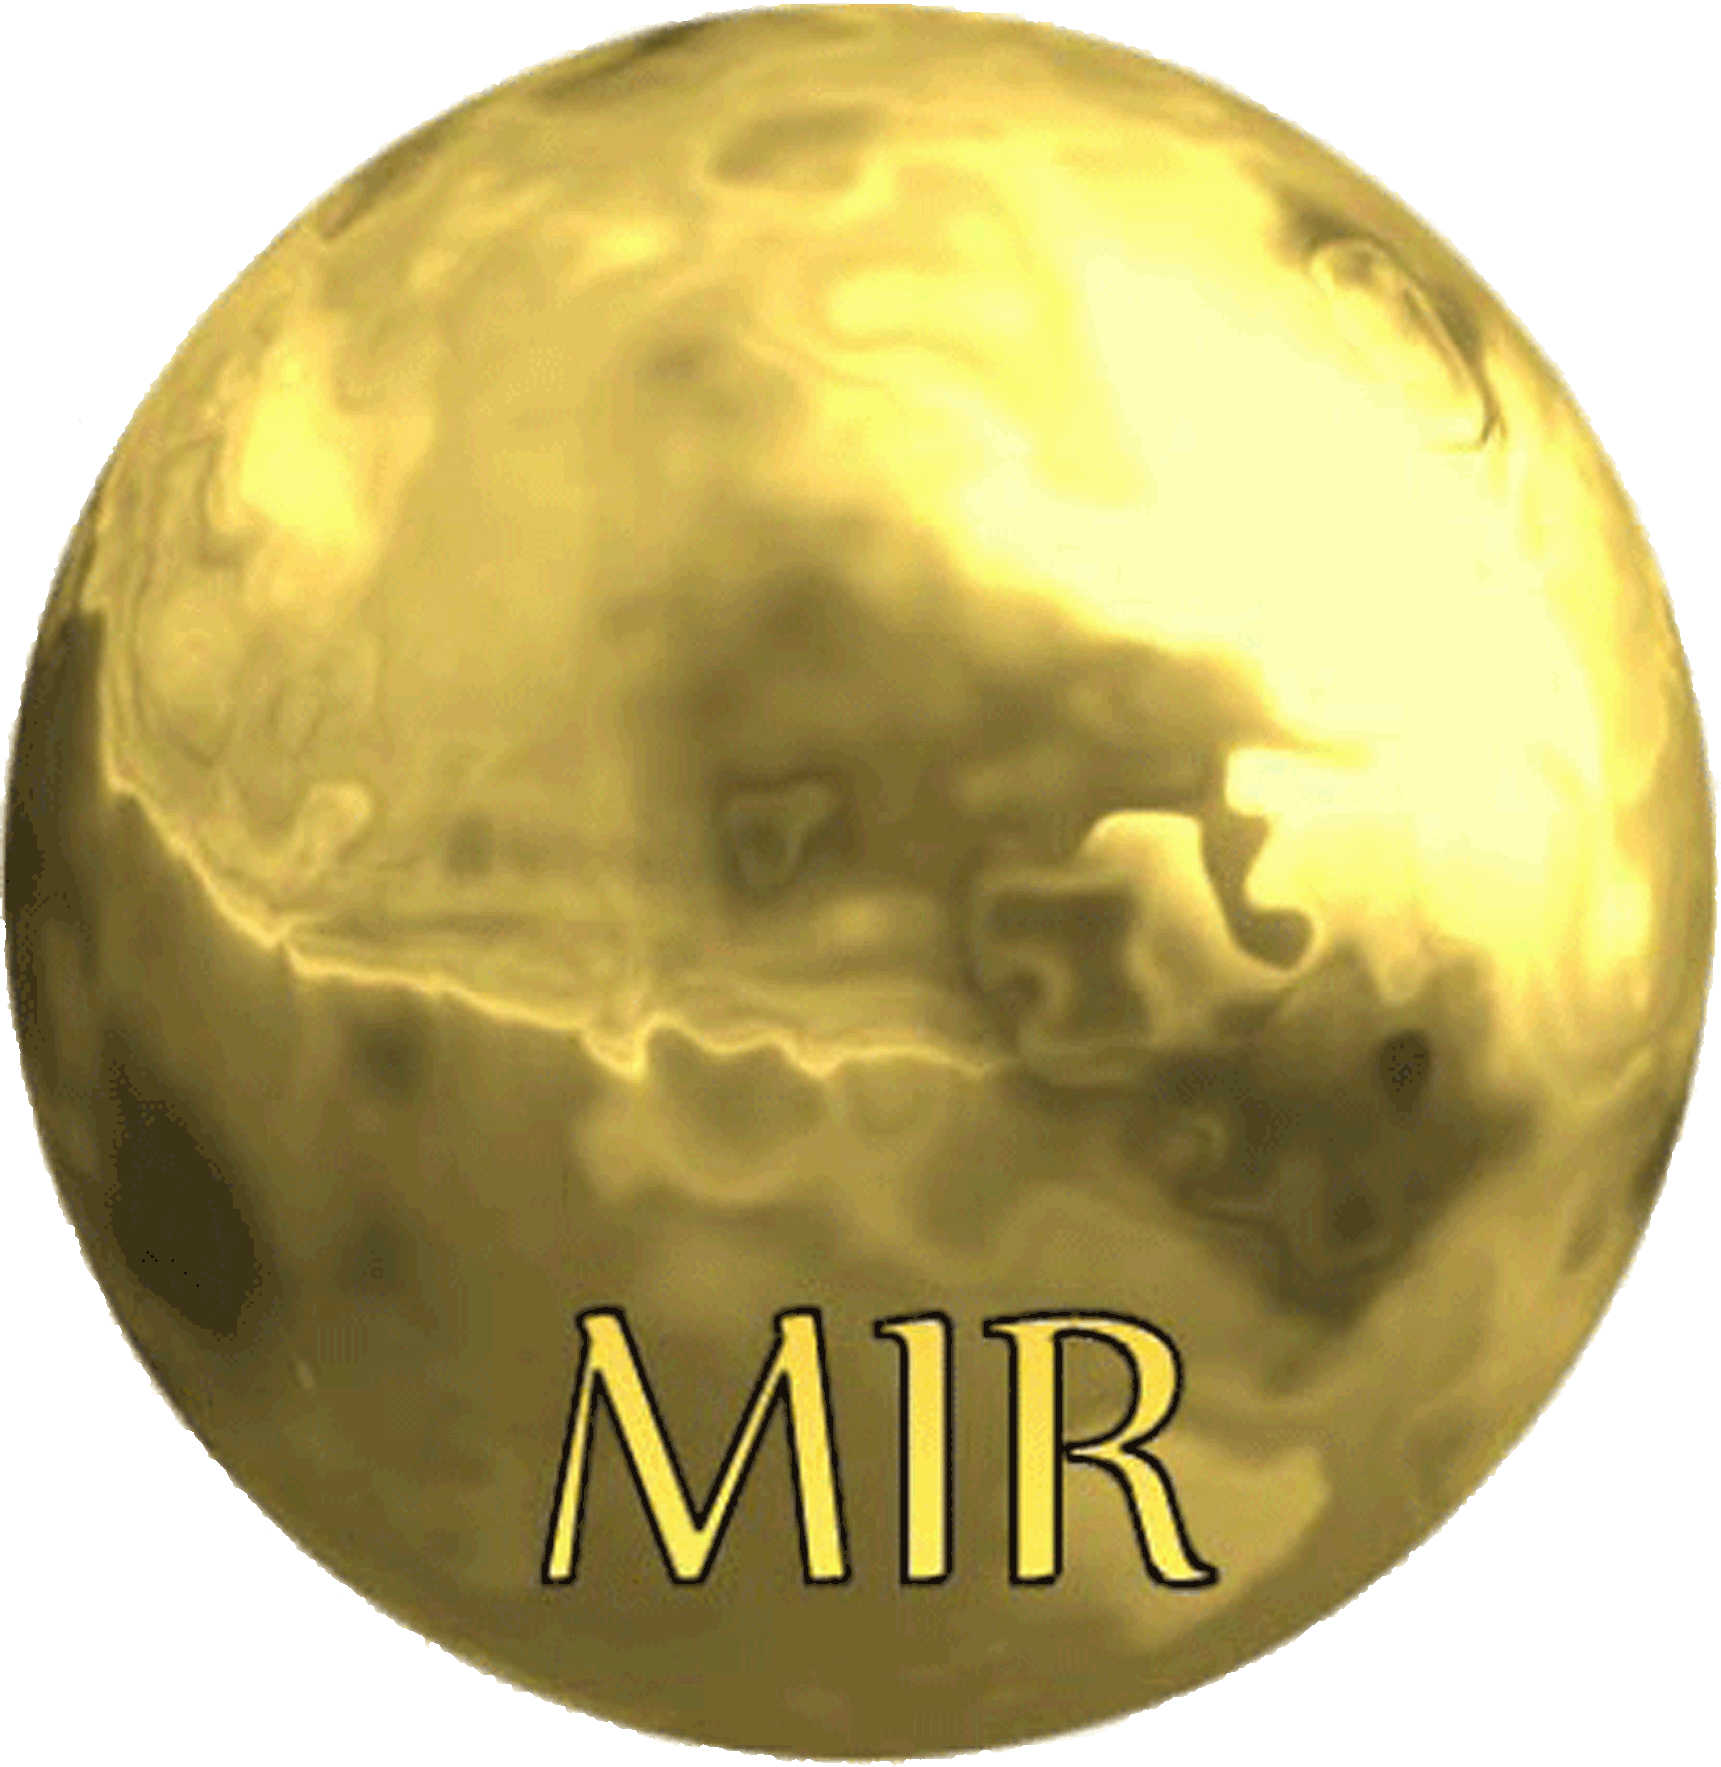 mir-methode-logo